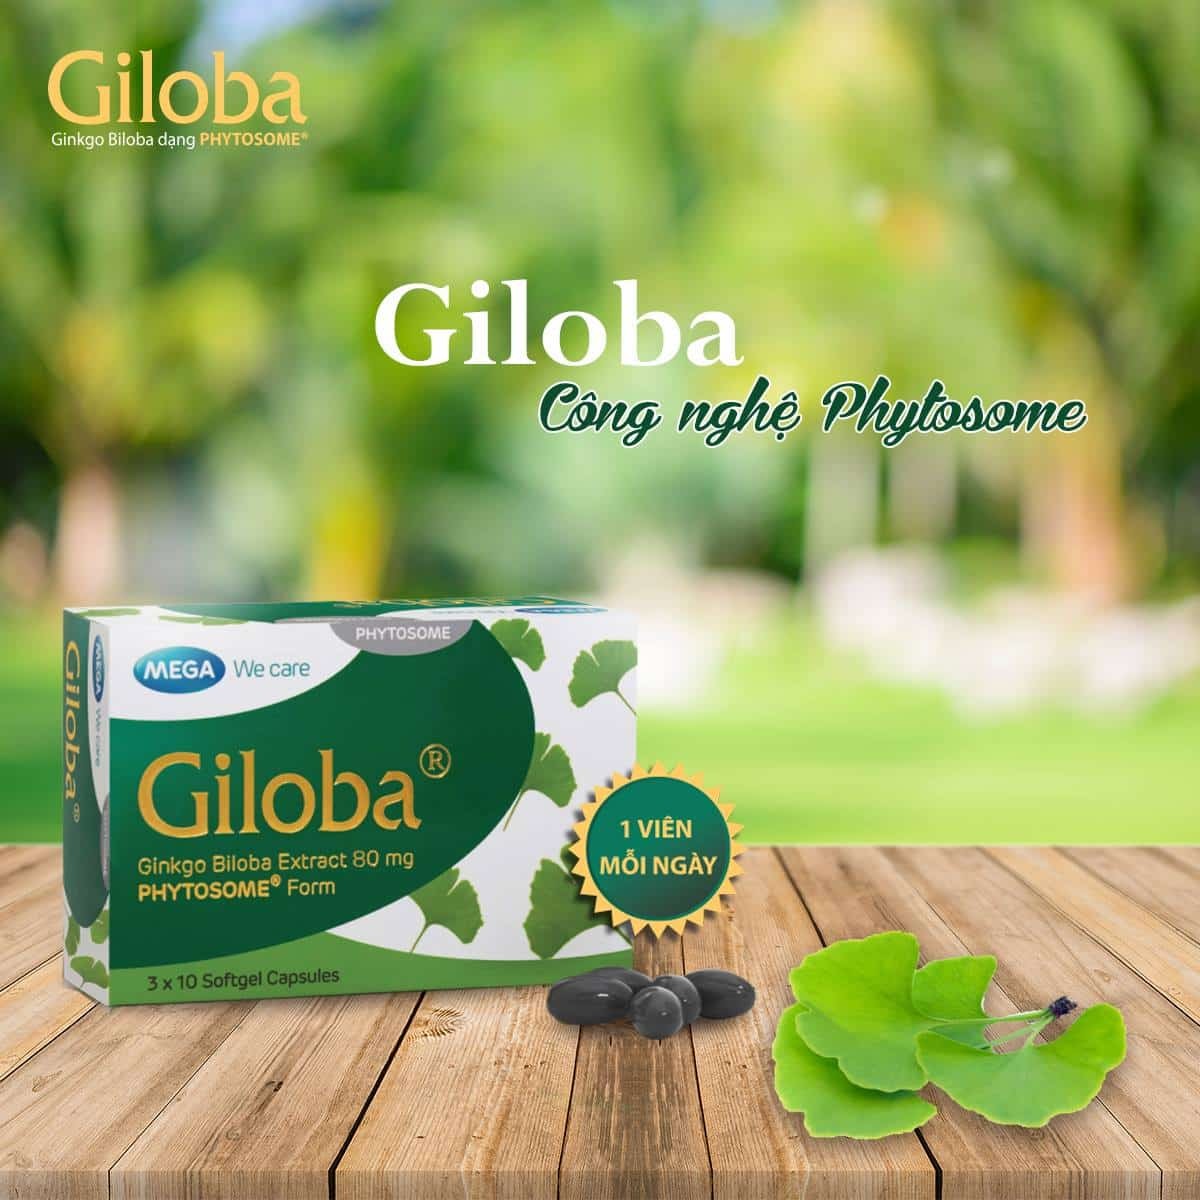 Thực phẩm chức năng Giloba 80mg của nhà sản xuất Mega